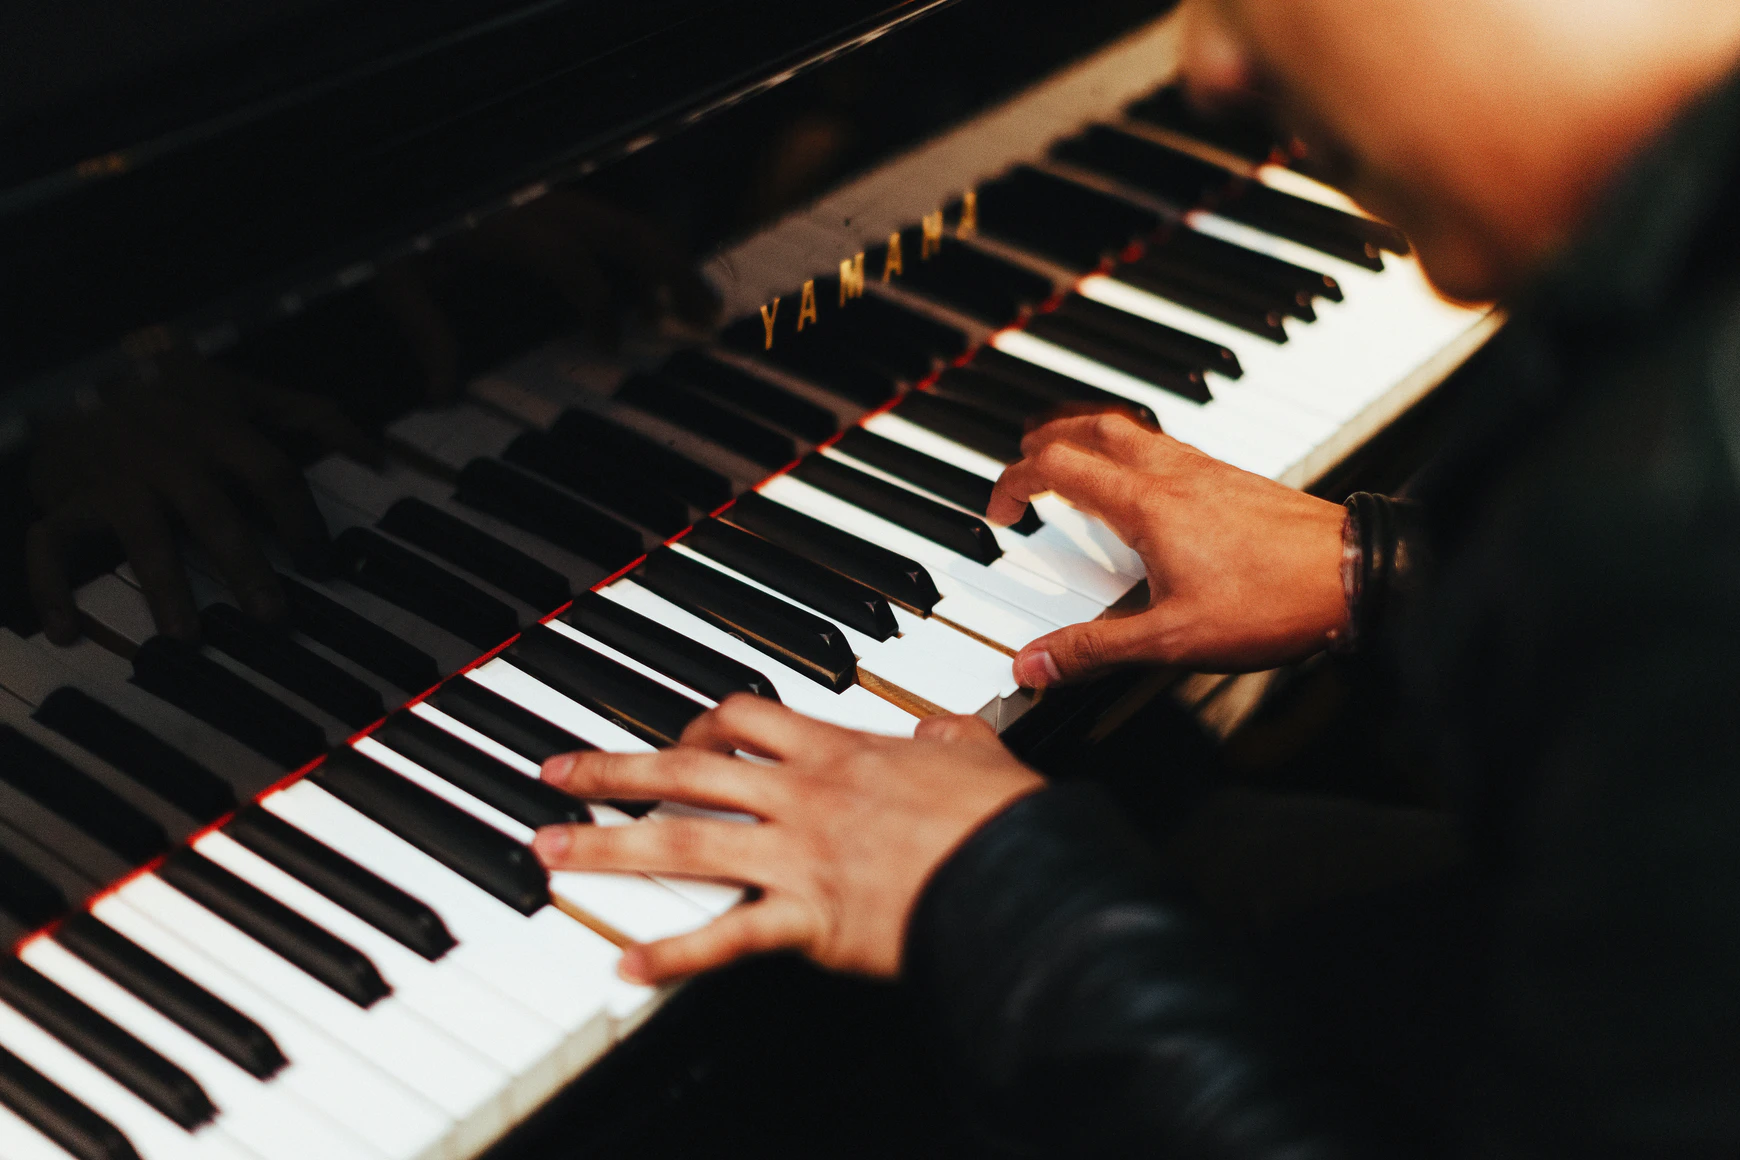 Yamaha piano keys